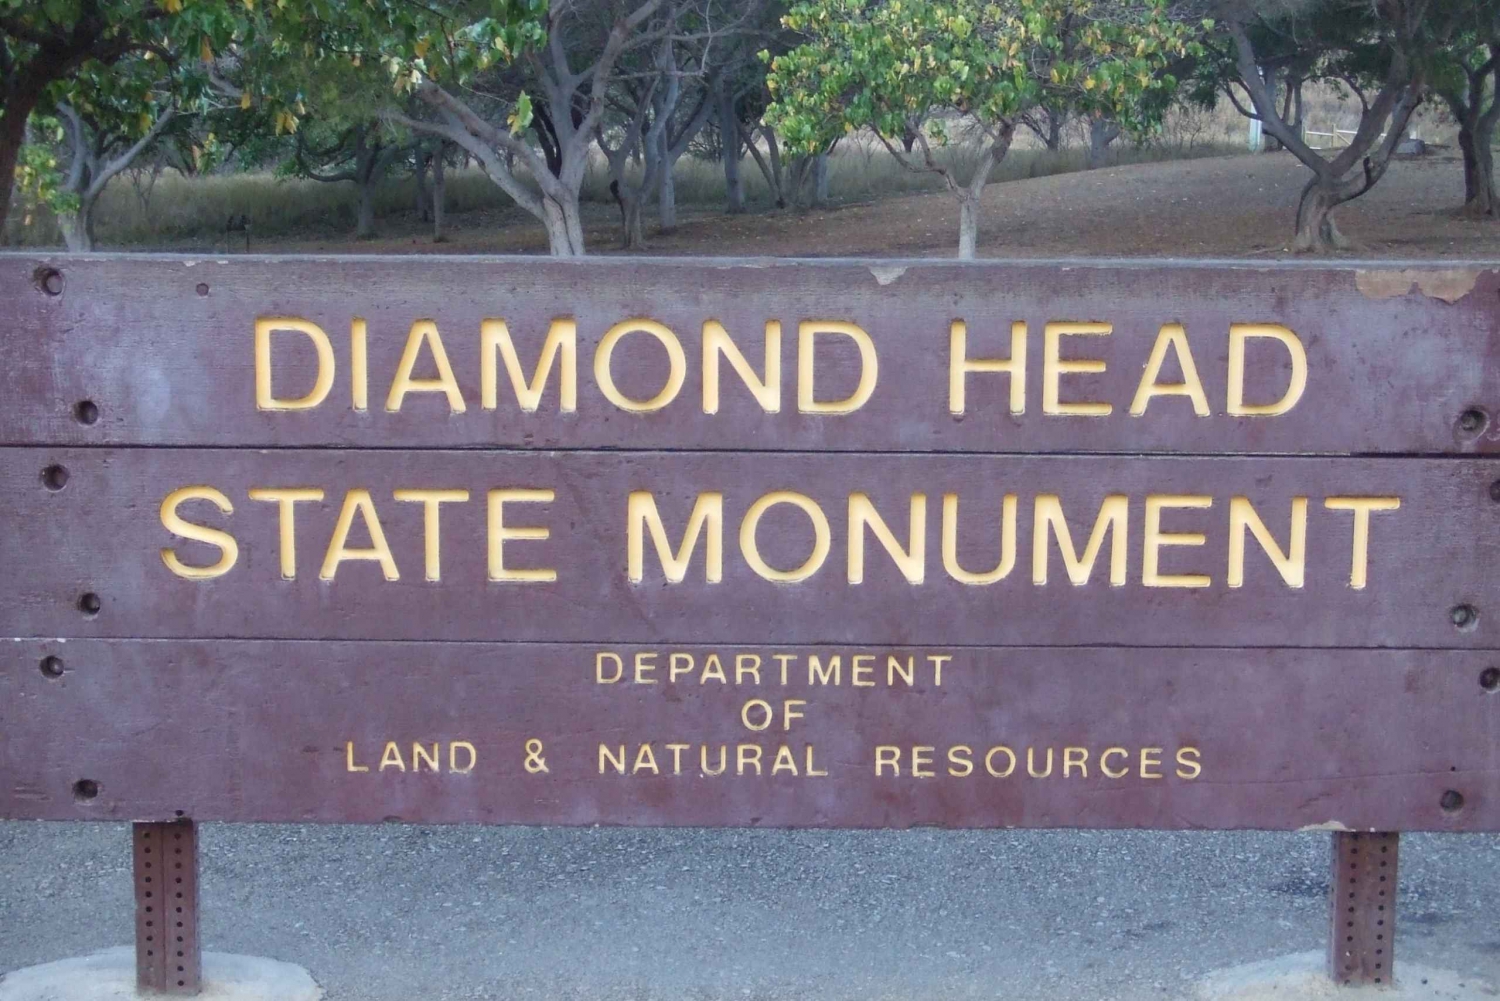 Oahu: Honolulu to Diamond Head Shuttle with Malasada